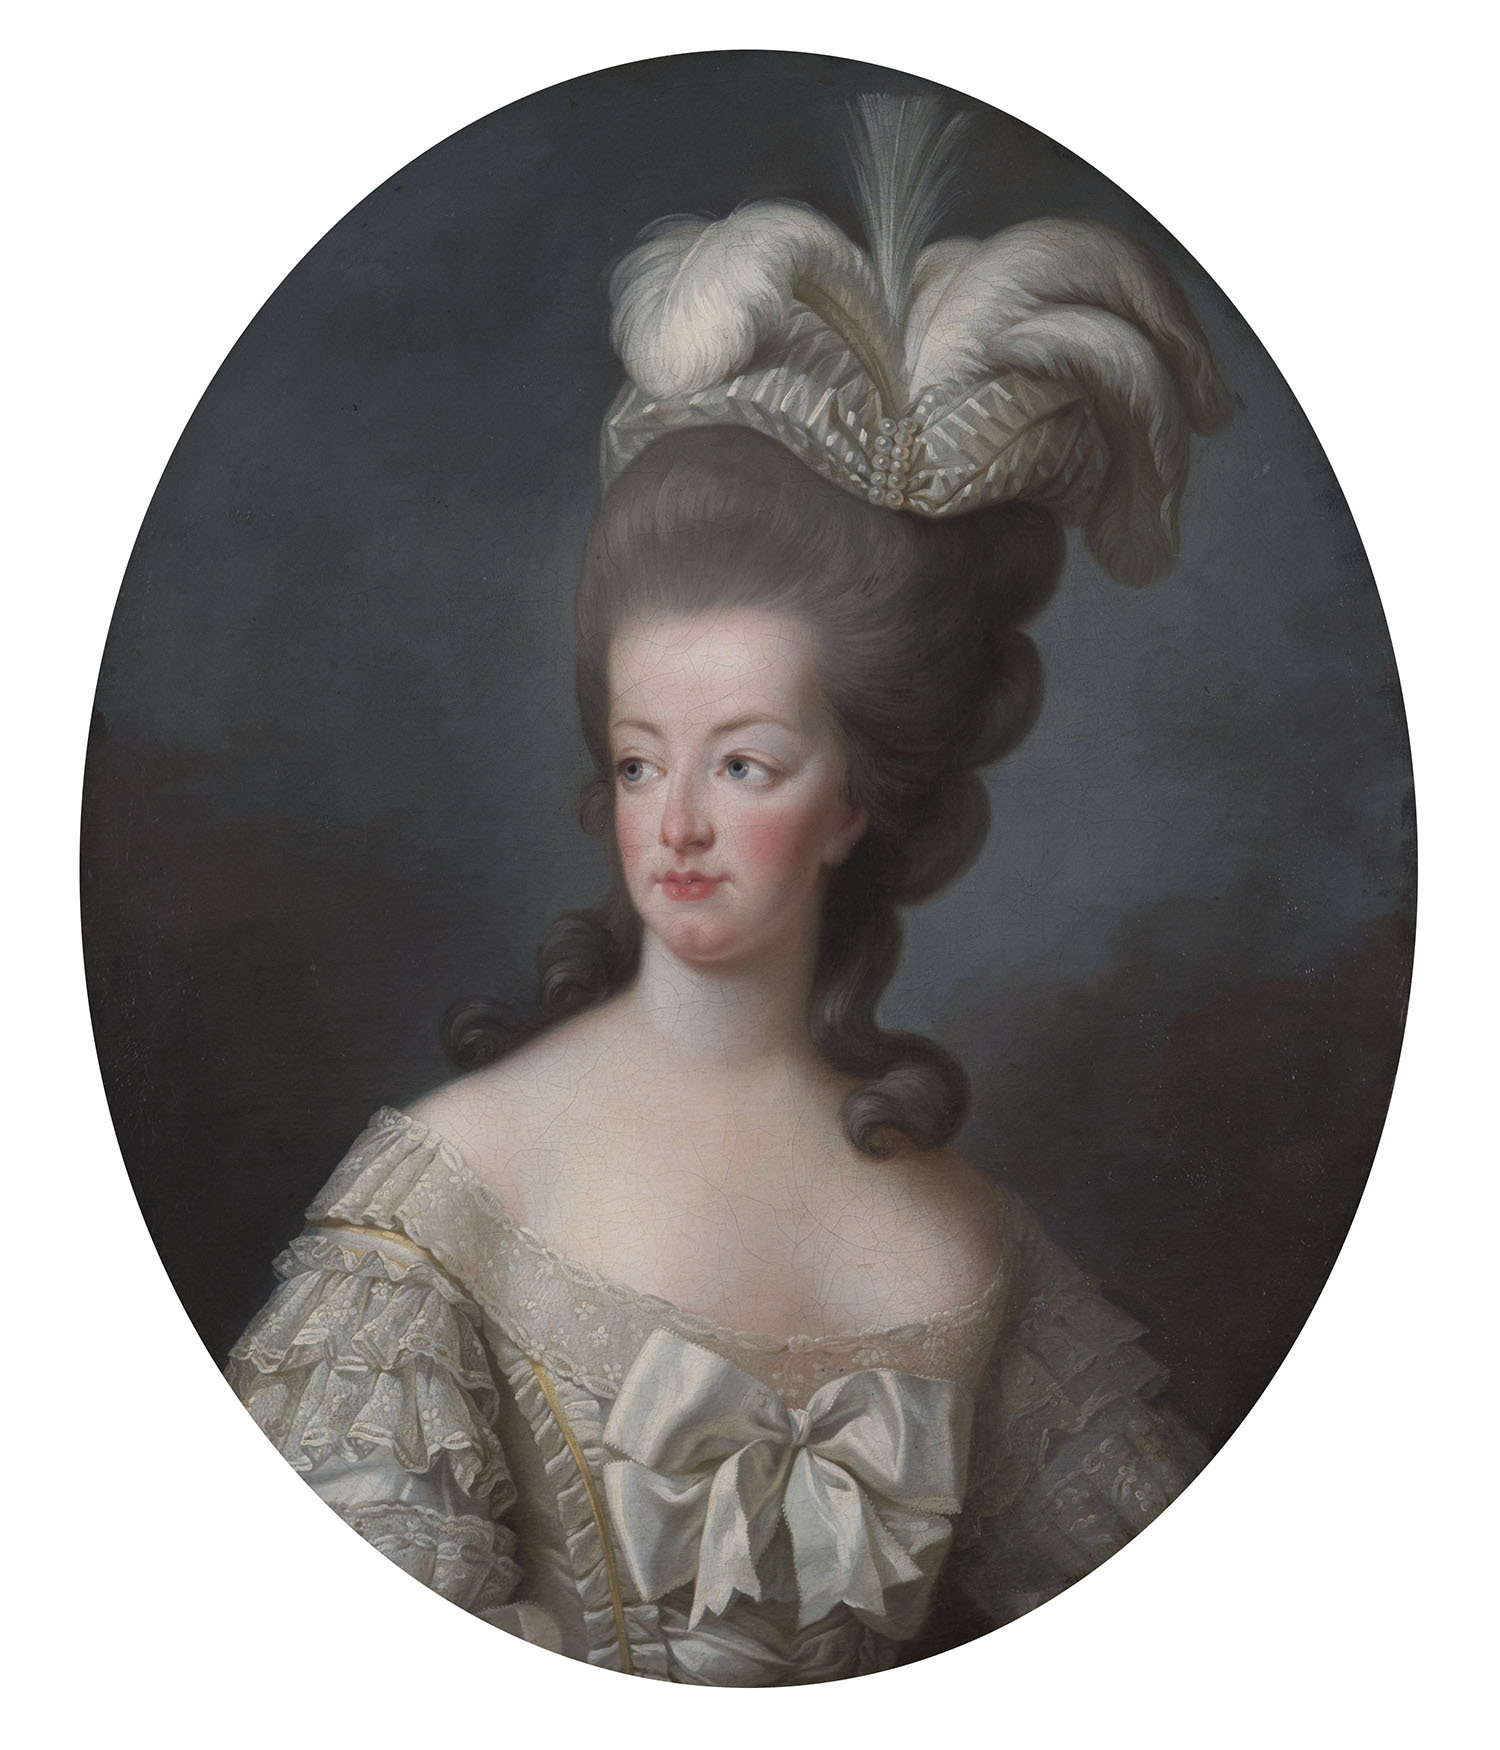 エリザベト=ルイーズ・ヴィジェ・ル・ブラン 《王妃マリー・アントワネット》 1778年 ブルトゥイユ城